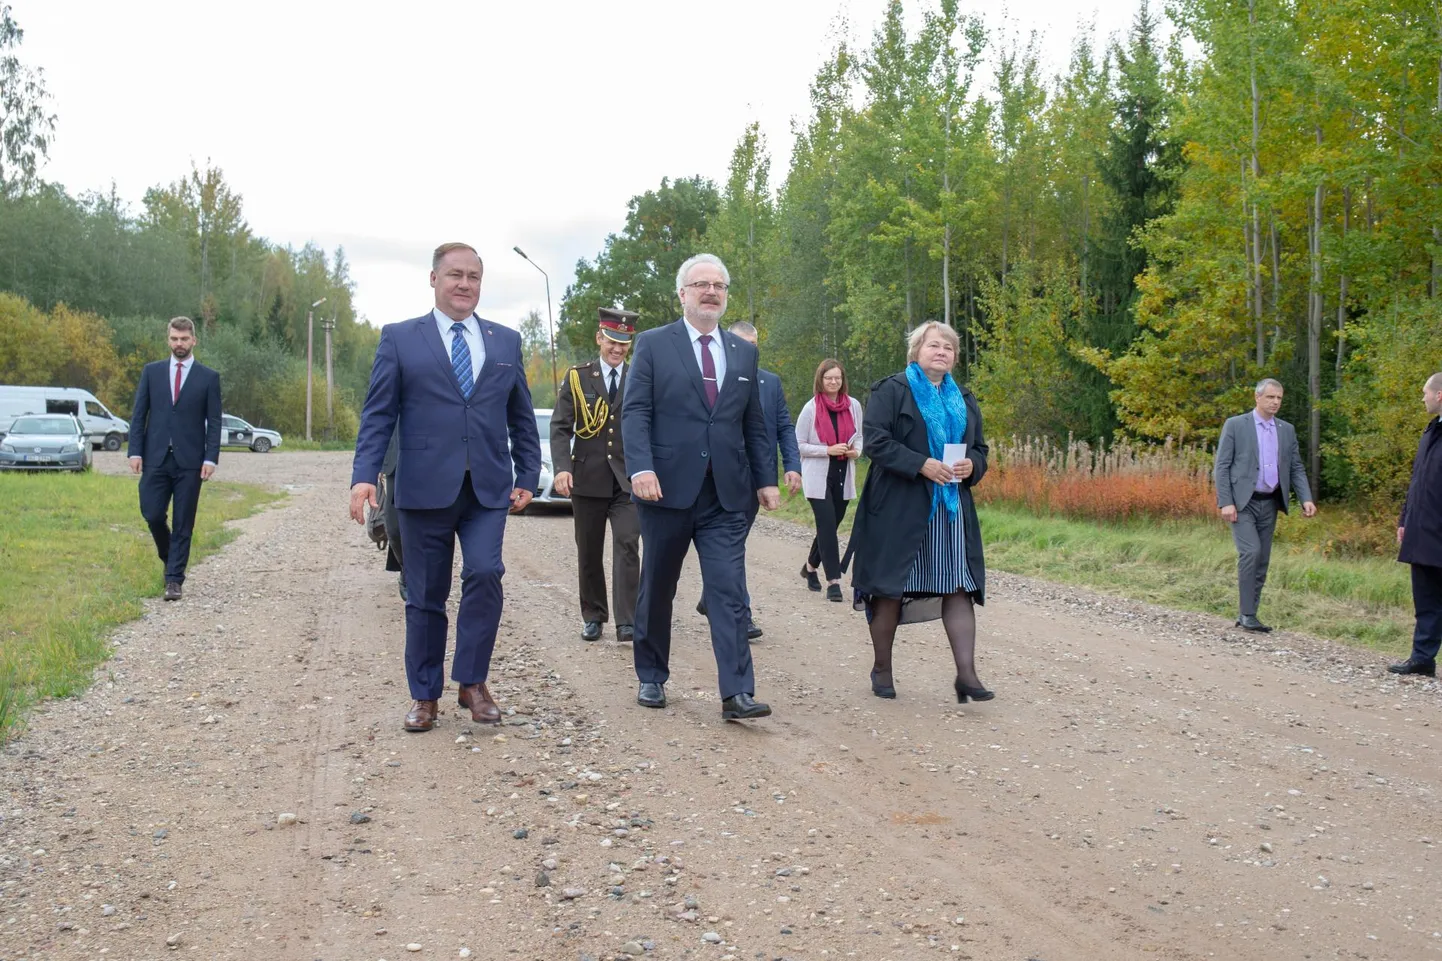 Läti president Egils Levits käis esmaspäeval Mõisaküla piiri ääres tutvumas oma maa kõige põhjapoolsema punktiga. Nii Eesti kui Läti poolt viib sellesse kohta kruusatee. Nüüd tahavad valdade esindajad, et piiriteed saaksid asfaldi alla.